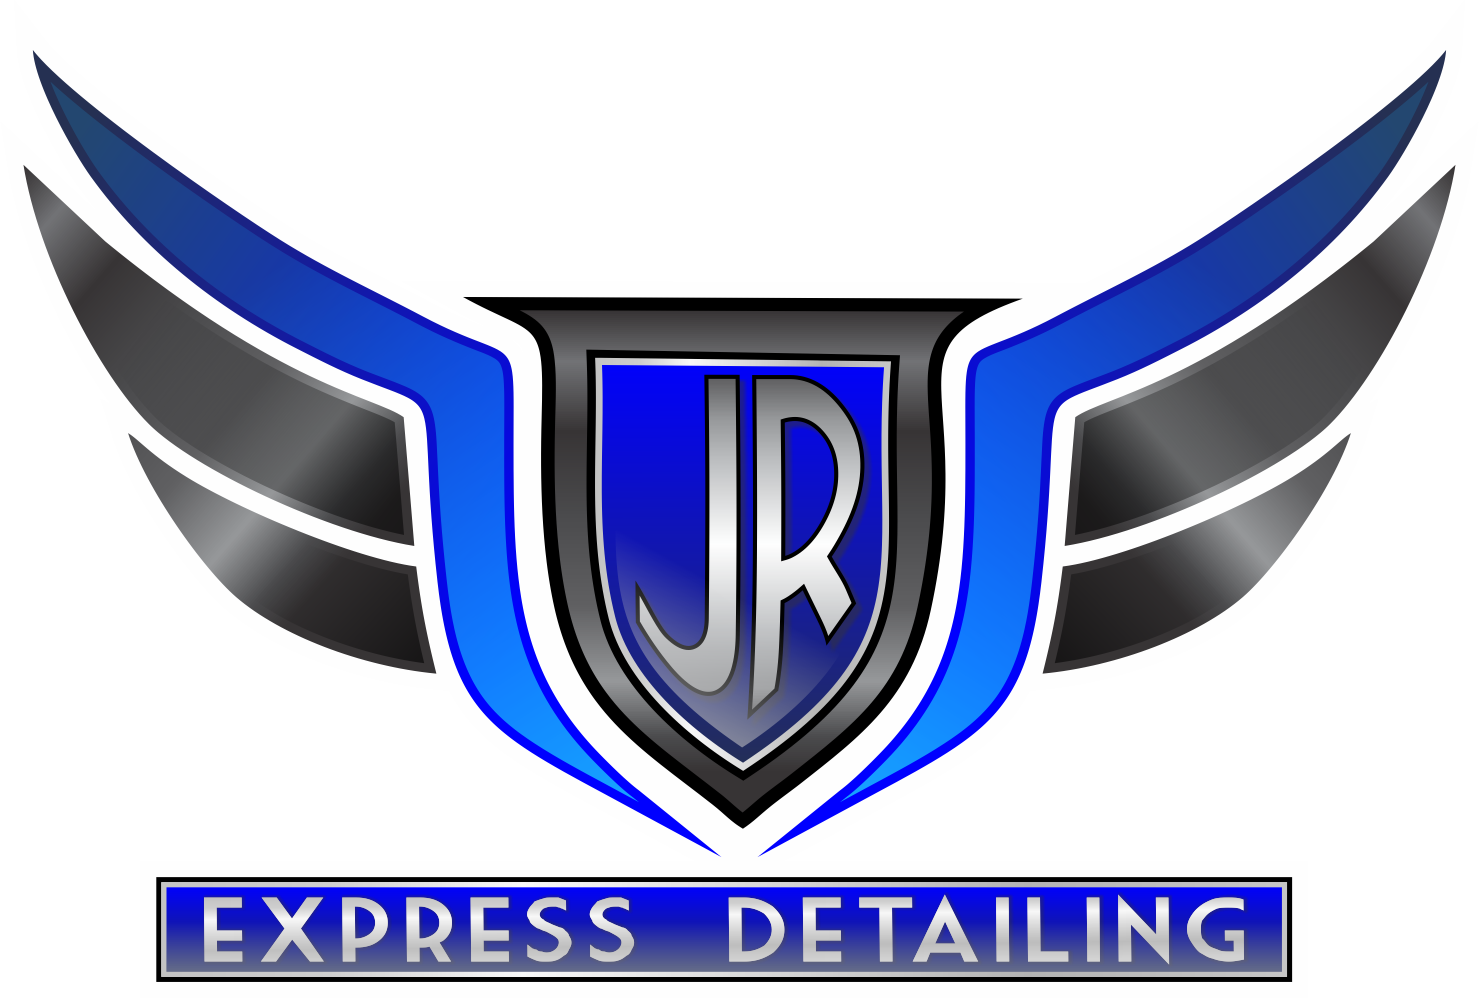 JR Express Detailing